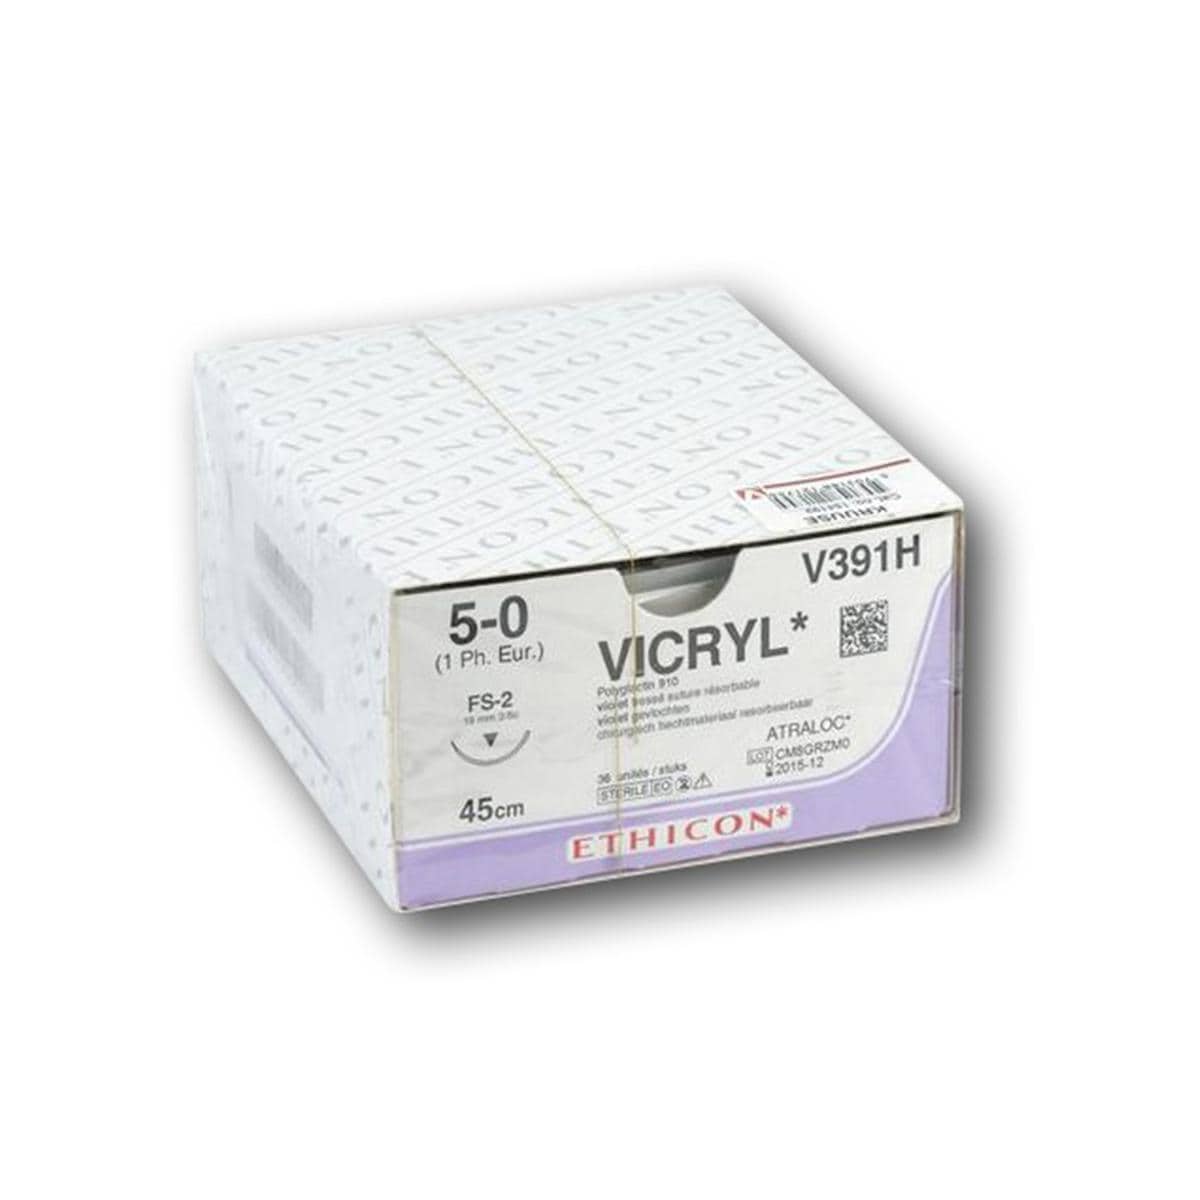 Vicryl - USP 5-0 FS2 45 cm violet V391H, per 36 stuks